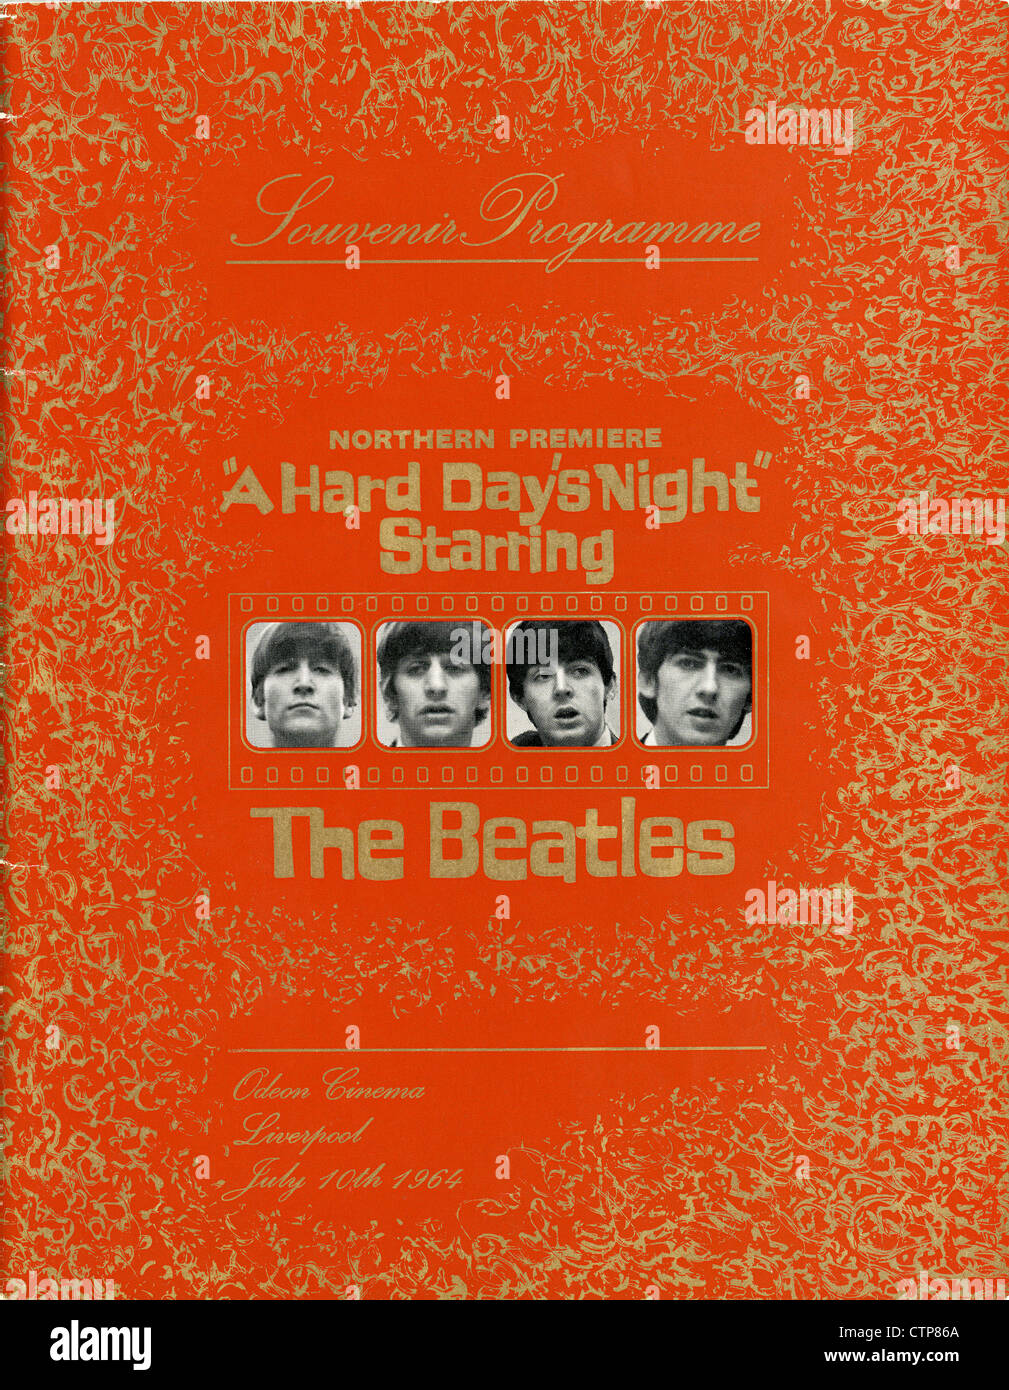 001085 - Les Beatles "une dure journée de nuit' le nord de Premiere Programme Souvenir de l Odeon Liverpool le 10 juillet 1964 Banque D'Images